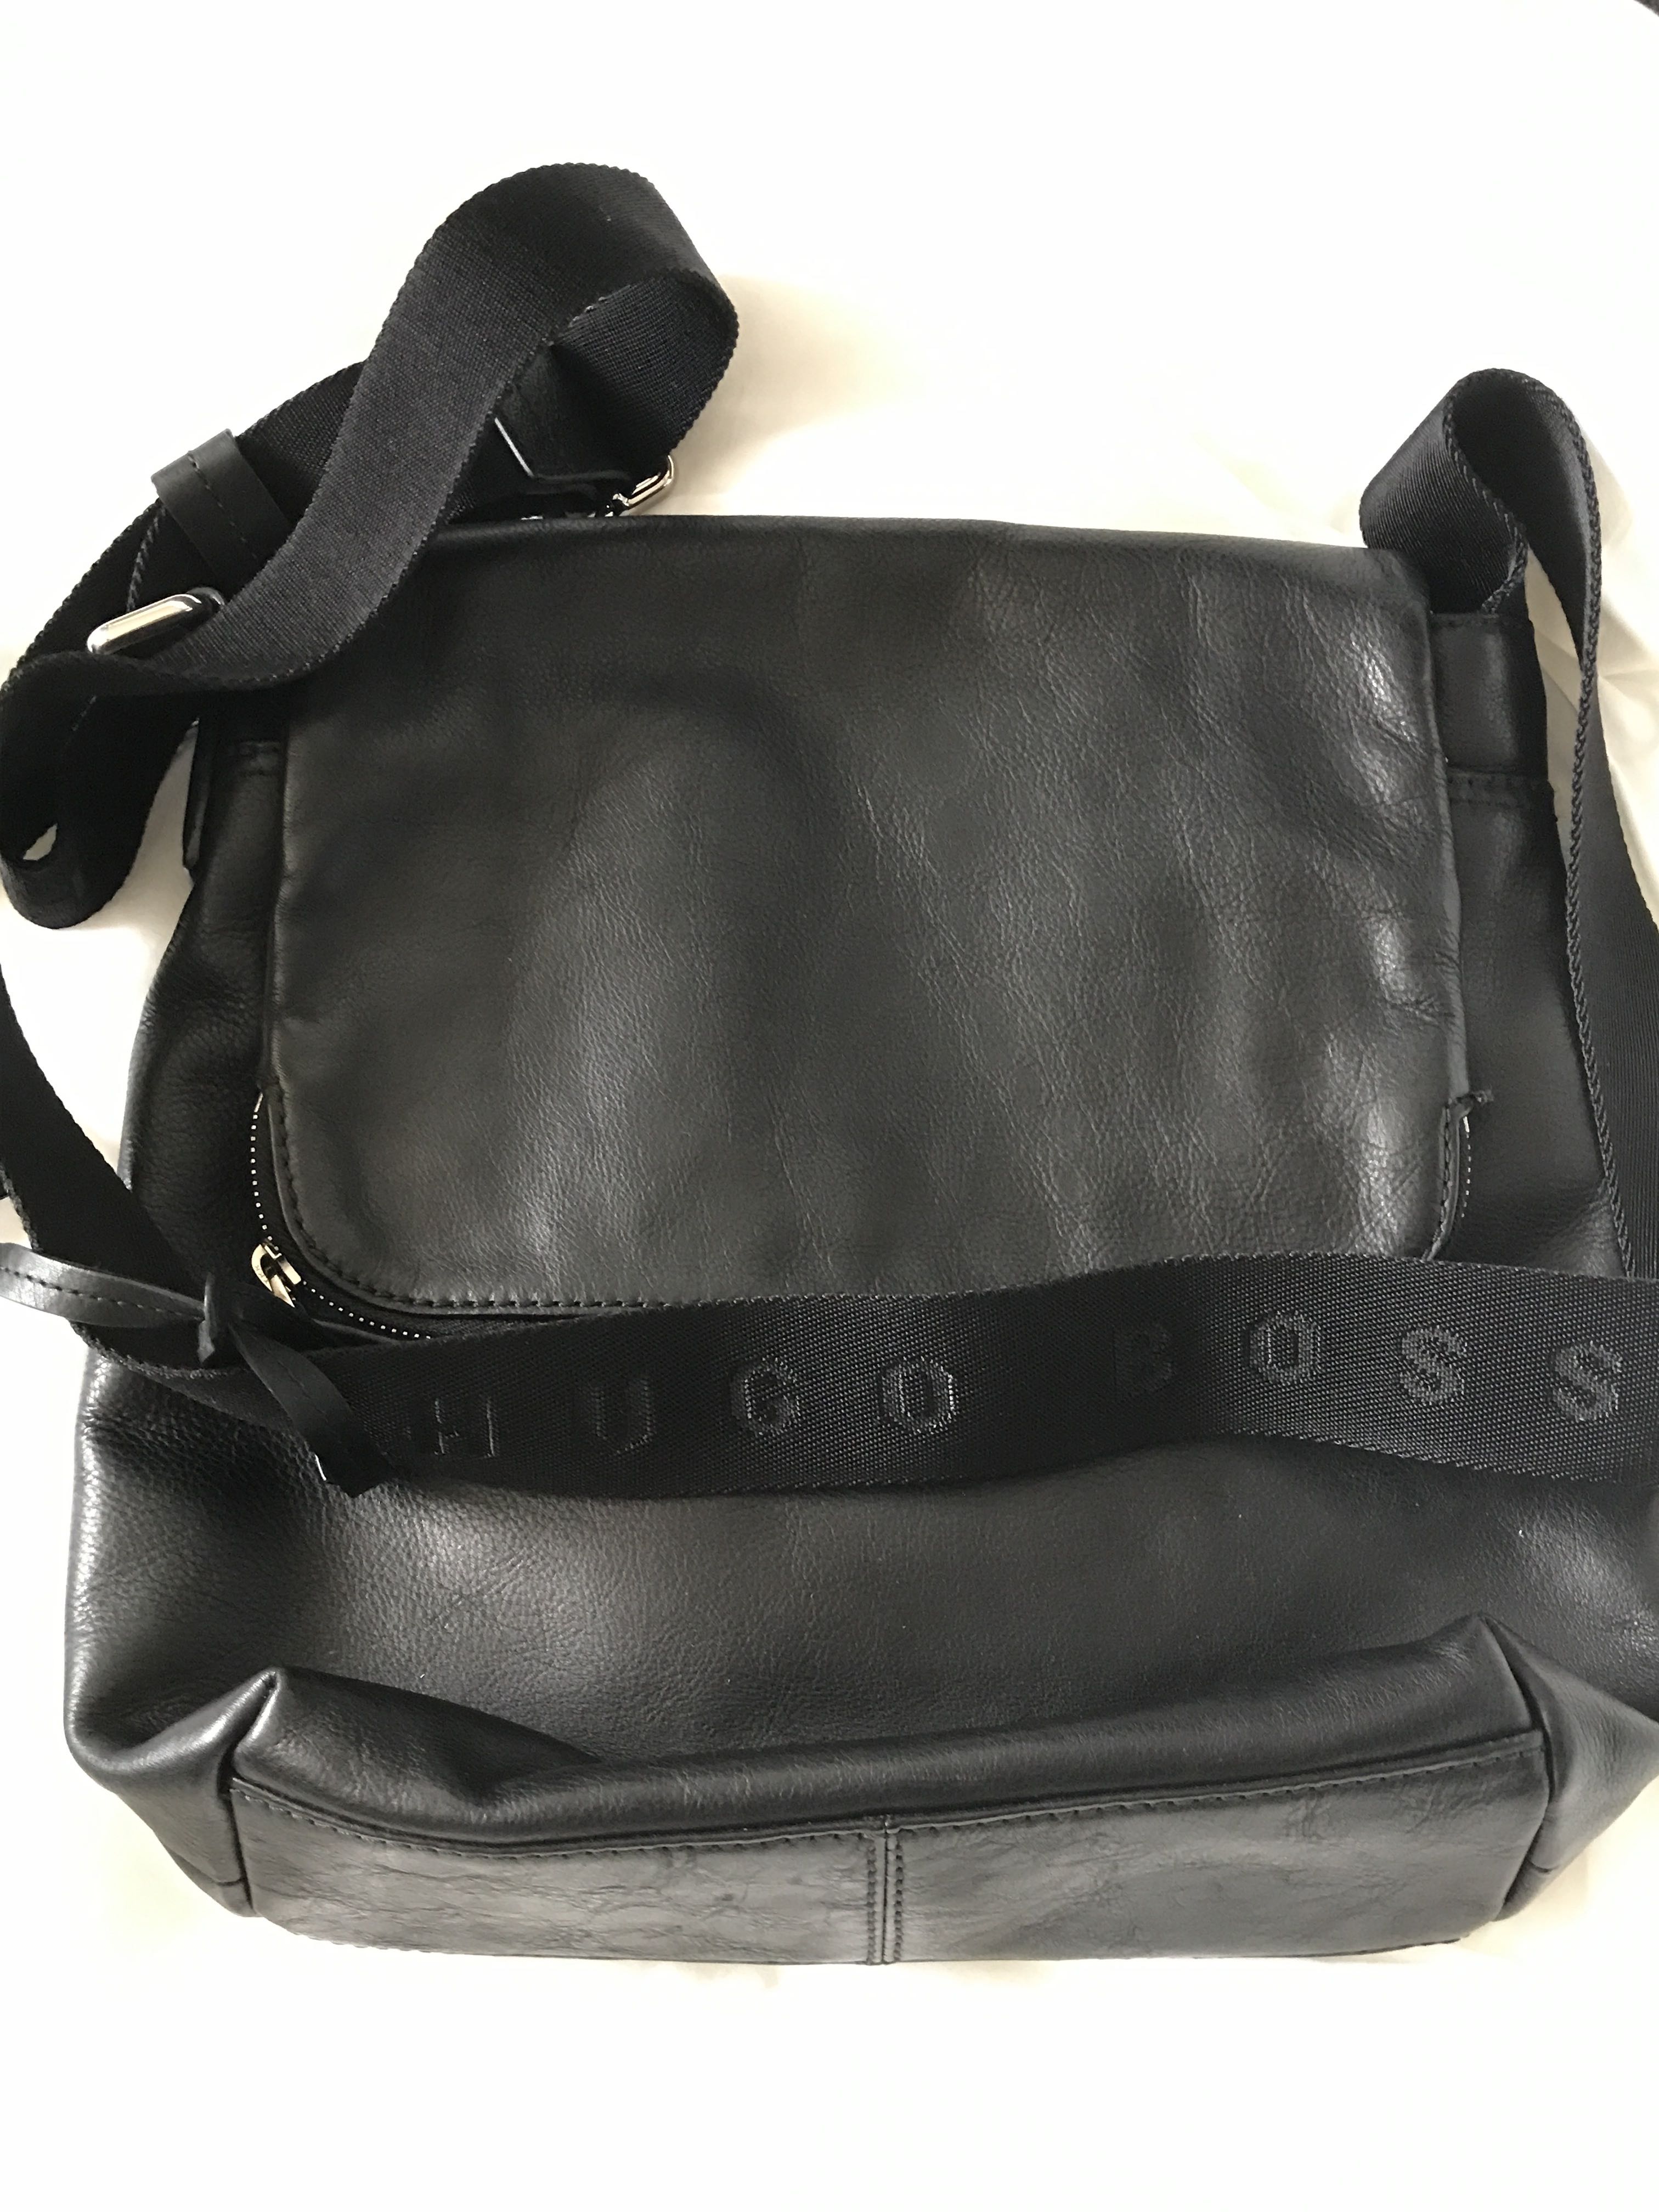 Hugo Boss Sling bag Unisex, Men's Fashion, Bags, Sling Bags on Carousell